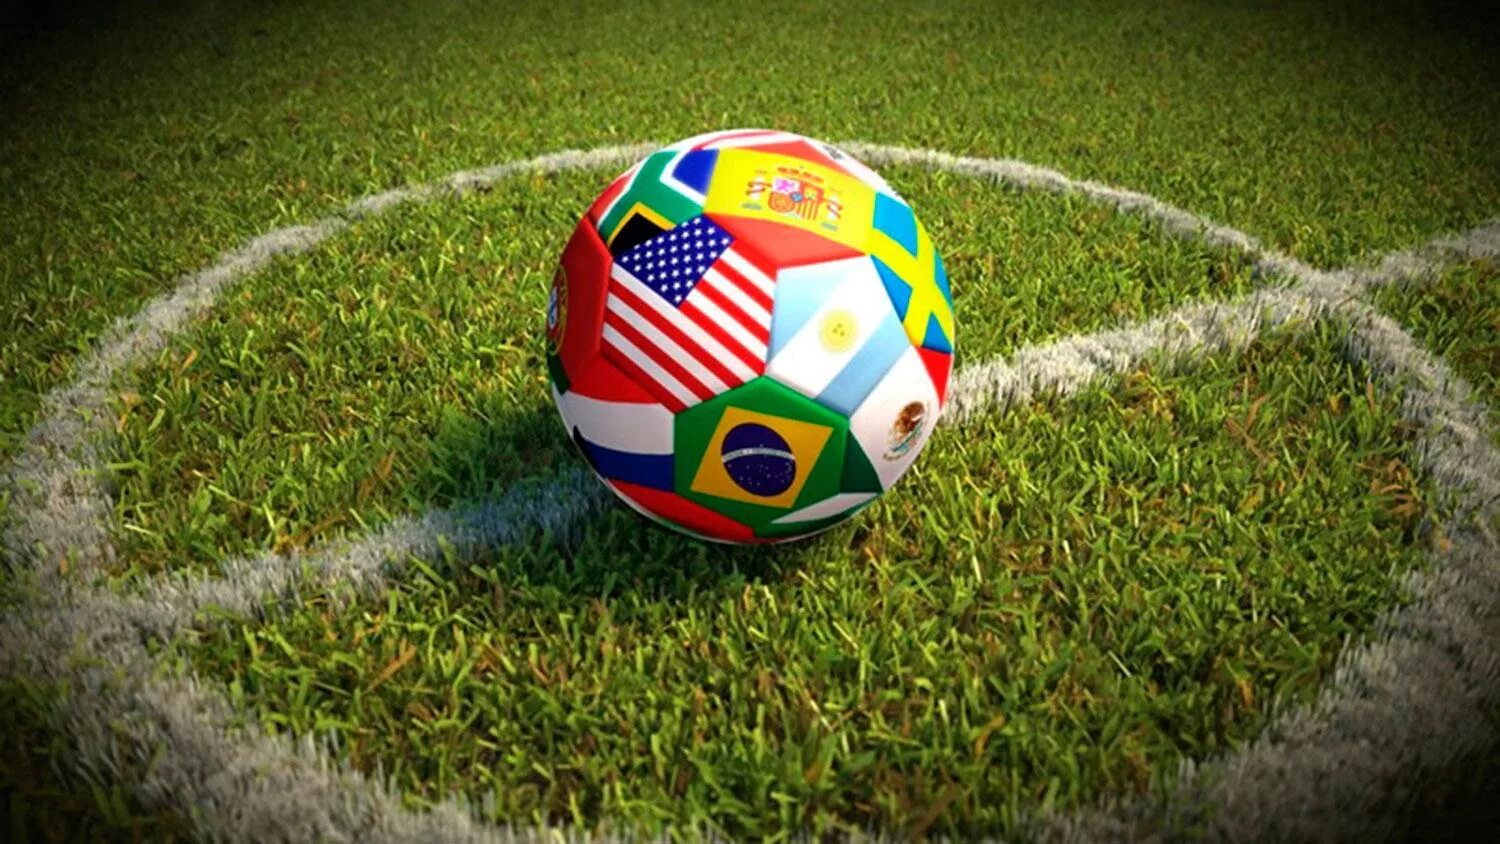 World cup soccer. Футбол. Мир футбола. Международный футбол.